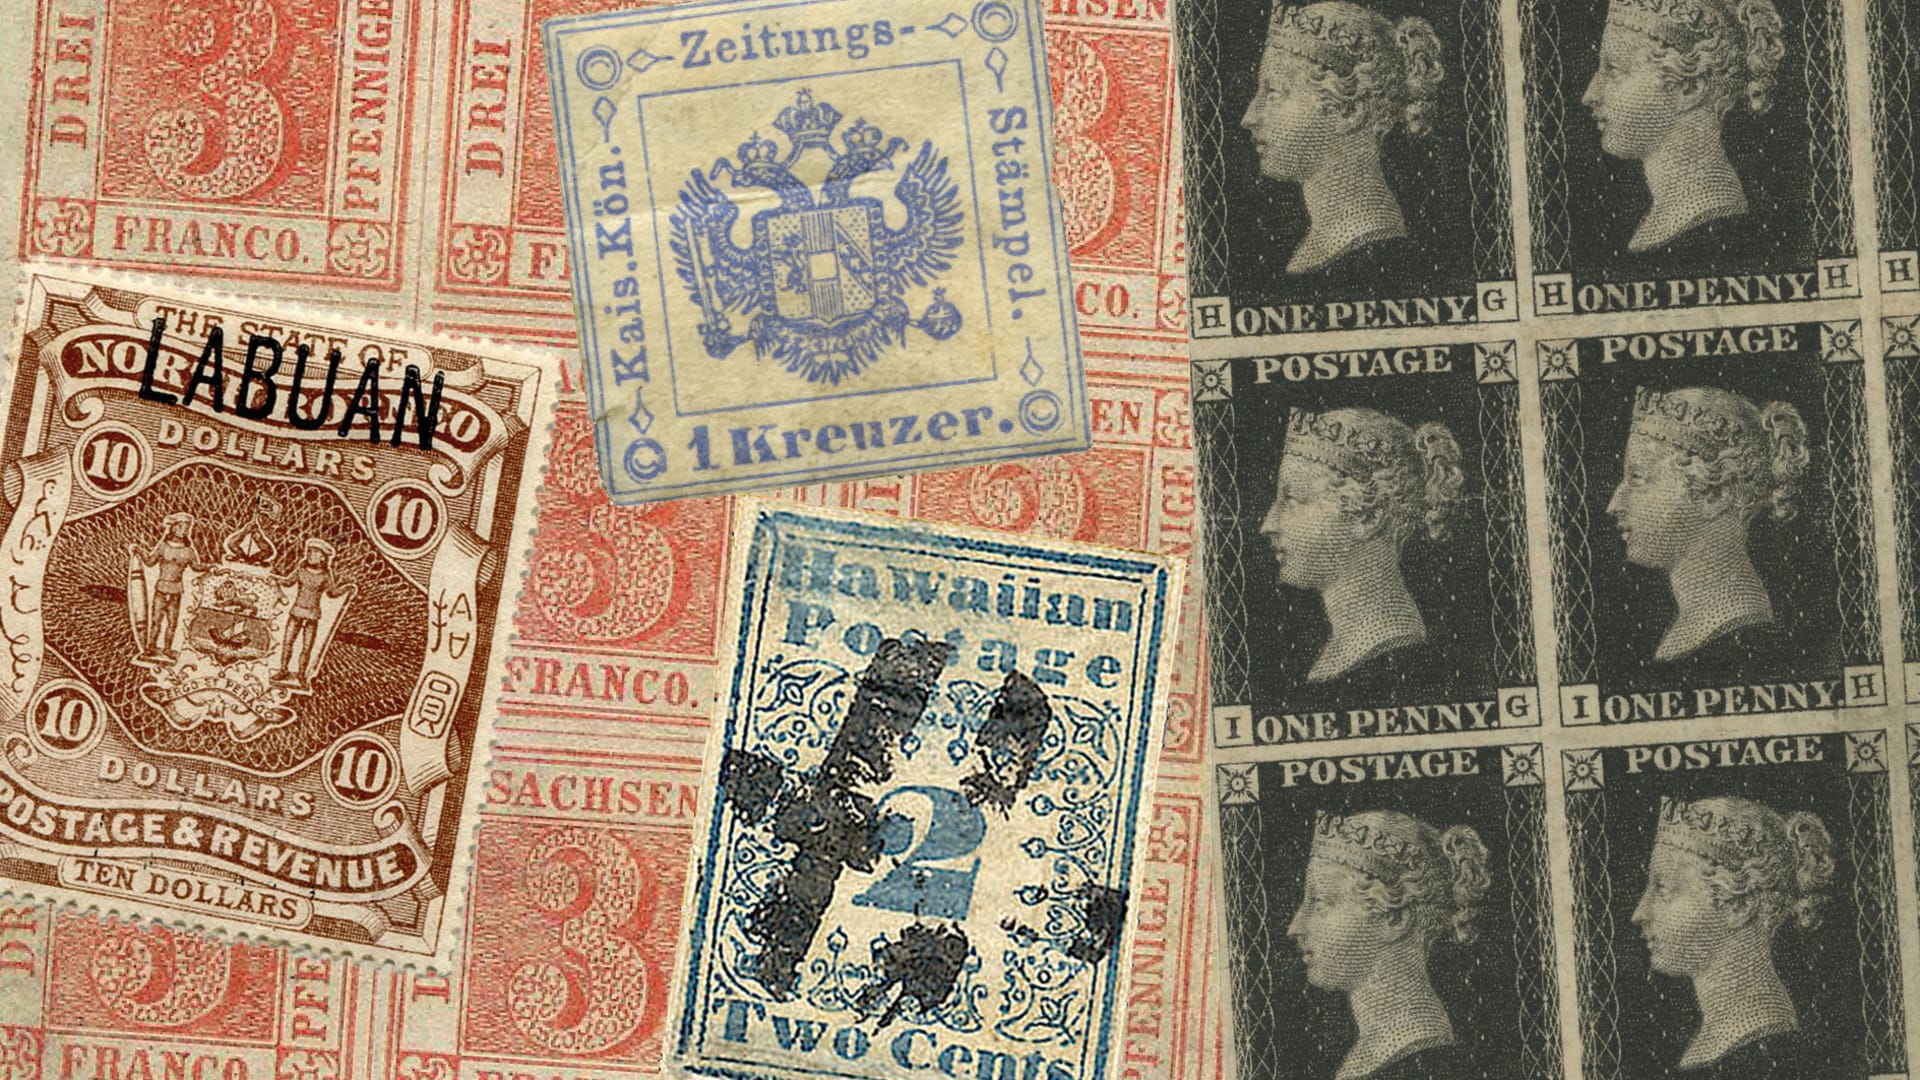 Poštovní známky si jako investiční nástroj vedou mimořádně zdatně.